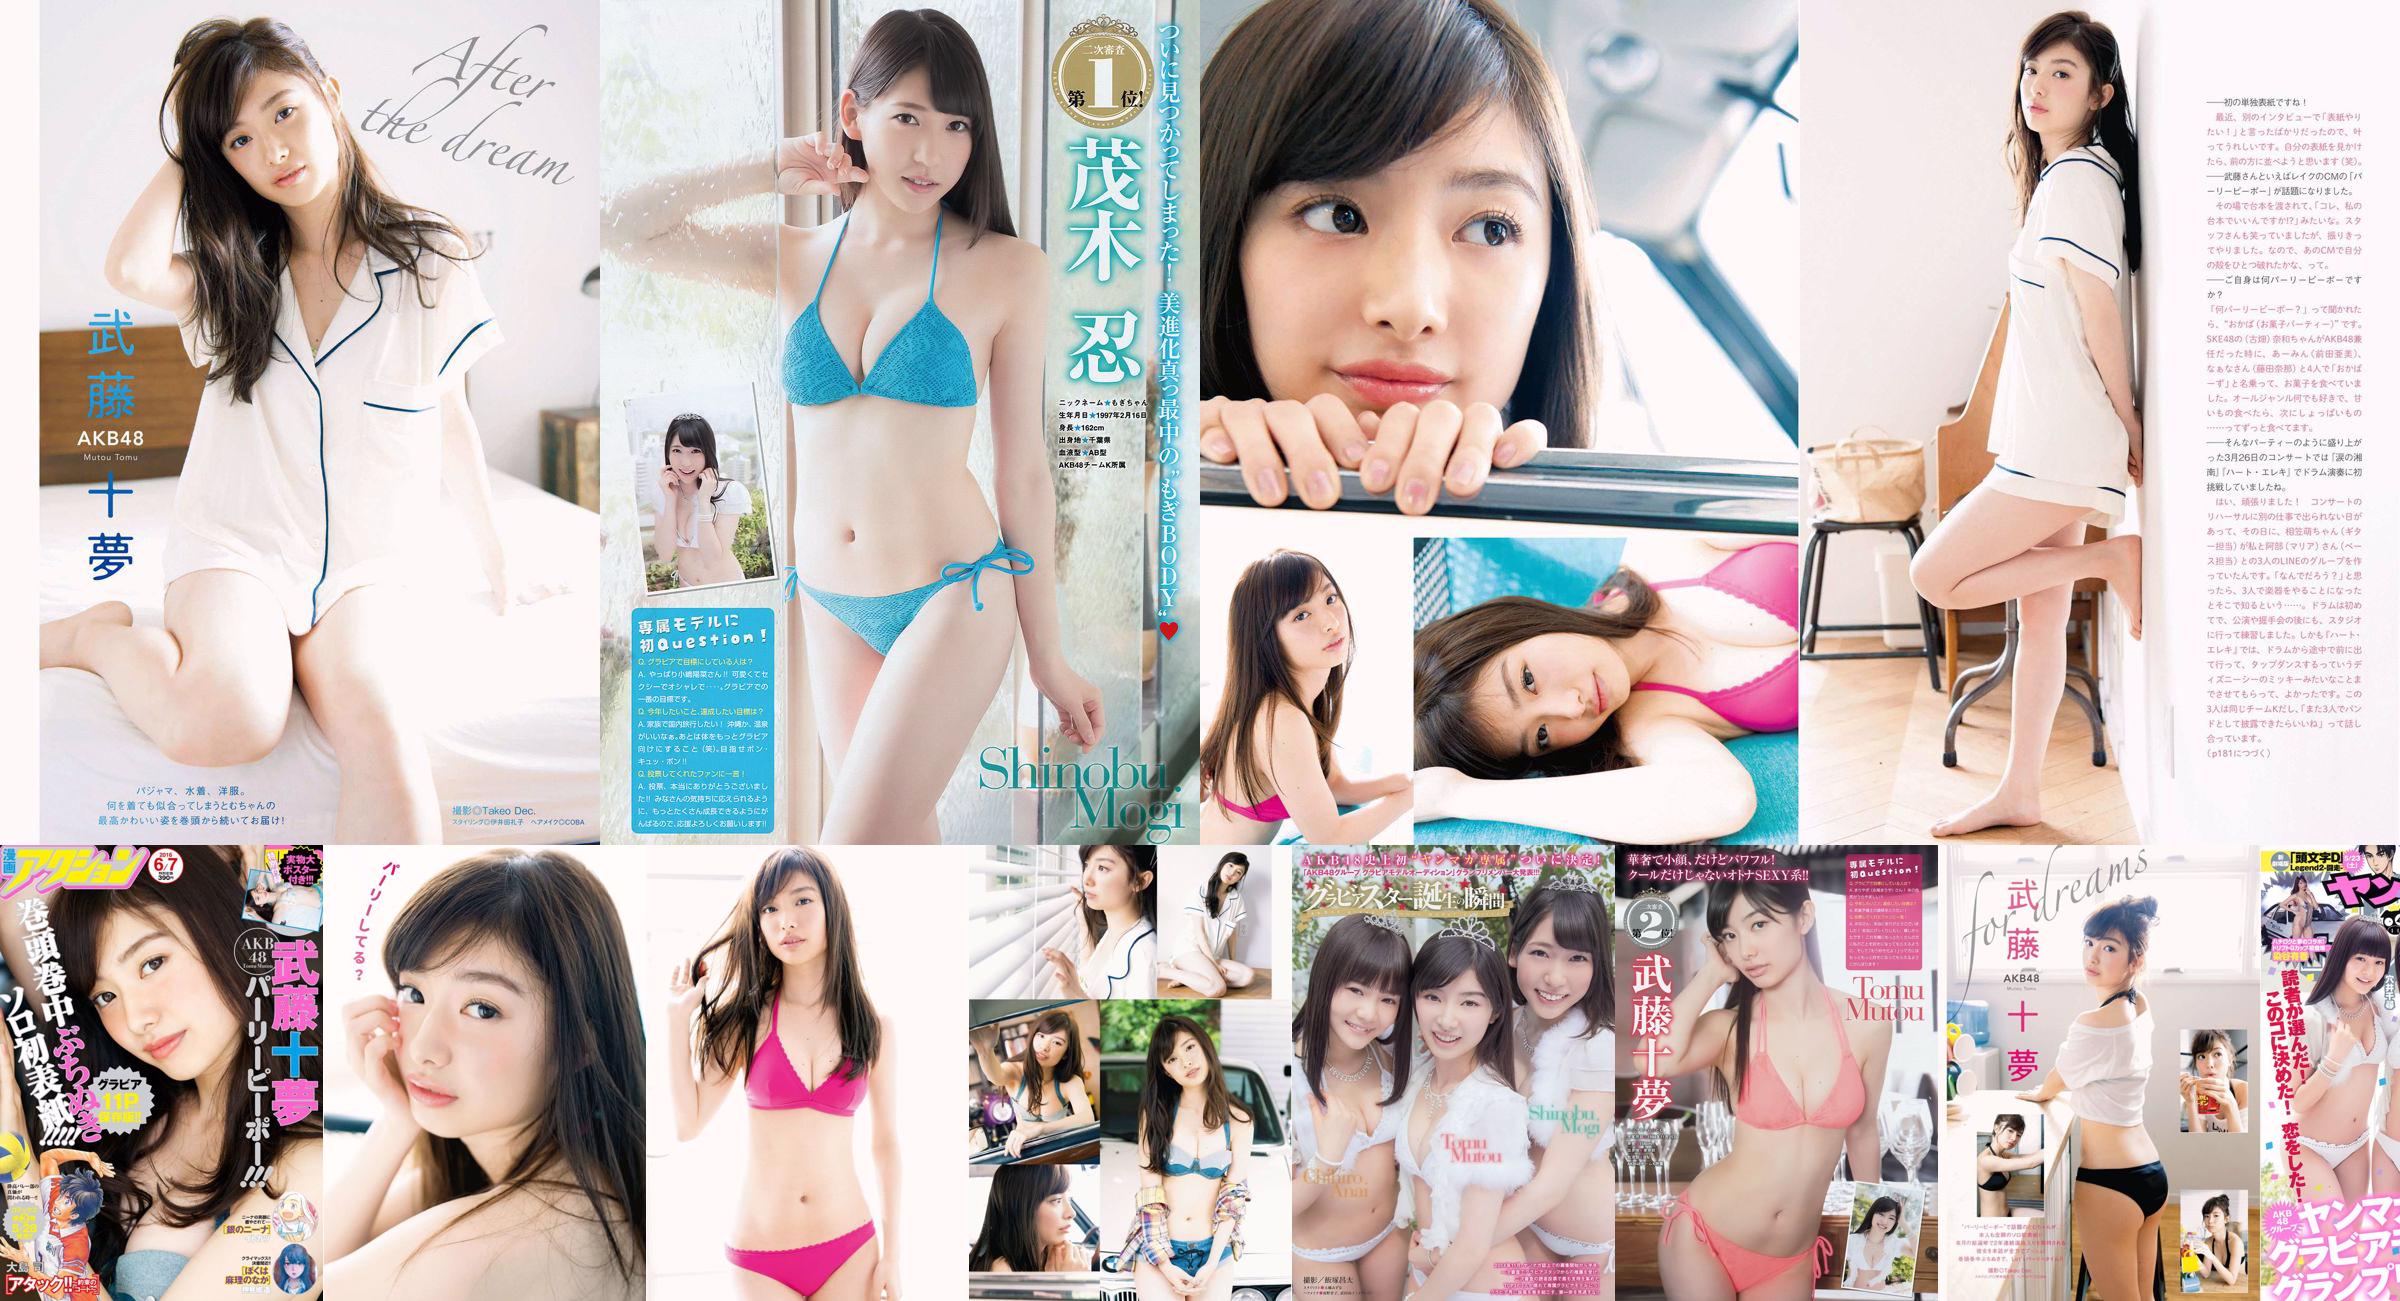 [Young Magazine] Tomu Muto Shinobu Mogi Chihiro Anai Erina Mano Yuka Someya 2015 nr 25 Zdjęcie No.fc3591 Strona 4